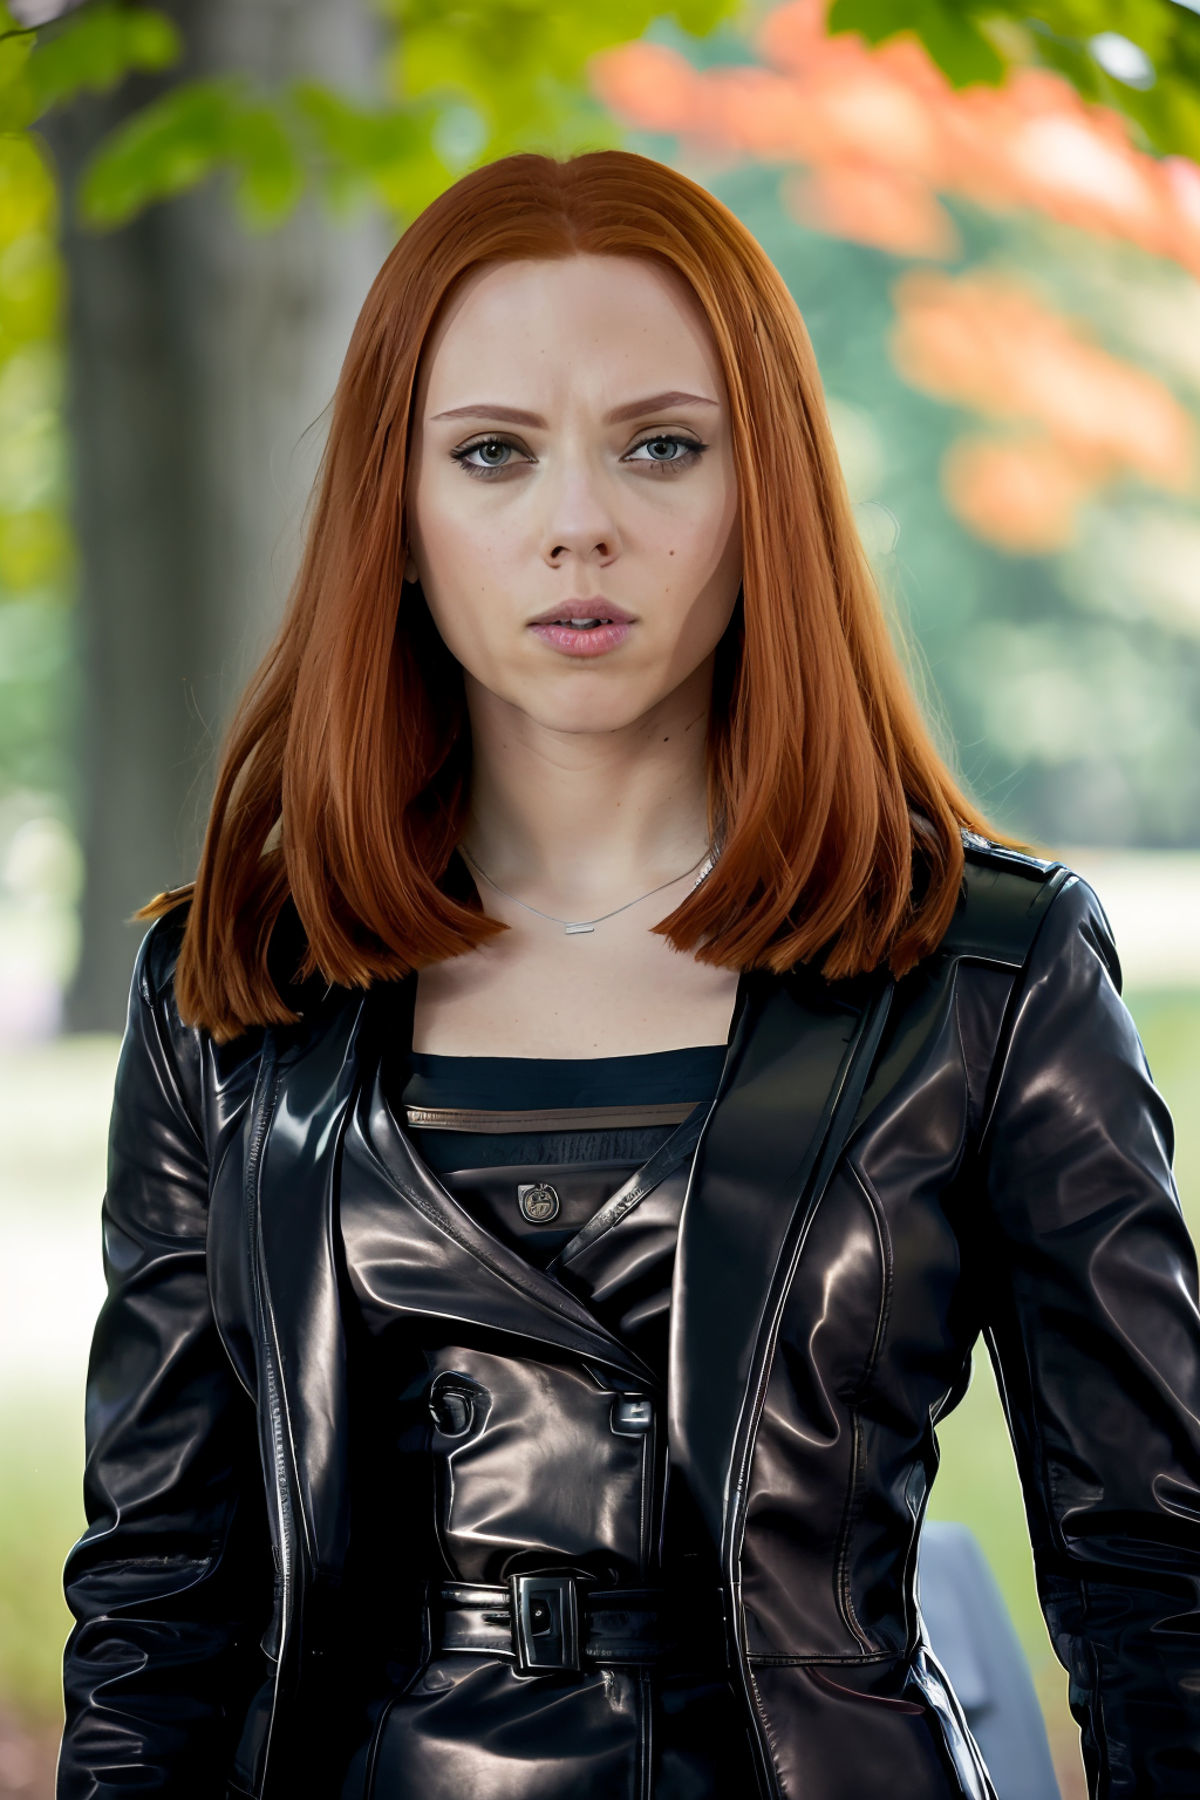 Black Widow - Scarlett Johansson - Character LoRA image by Konan